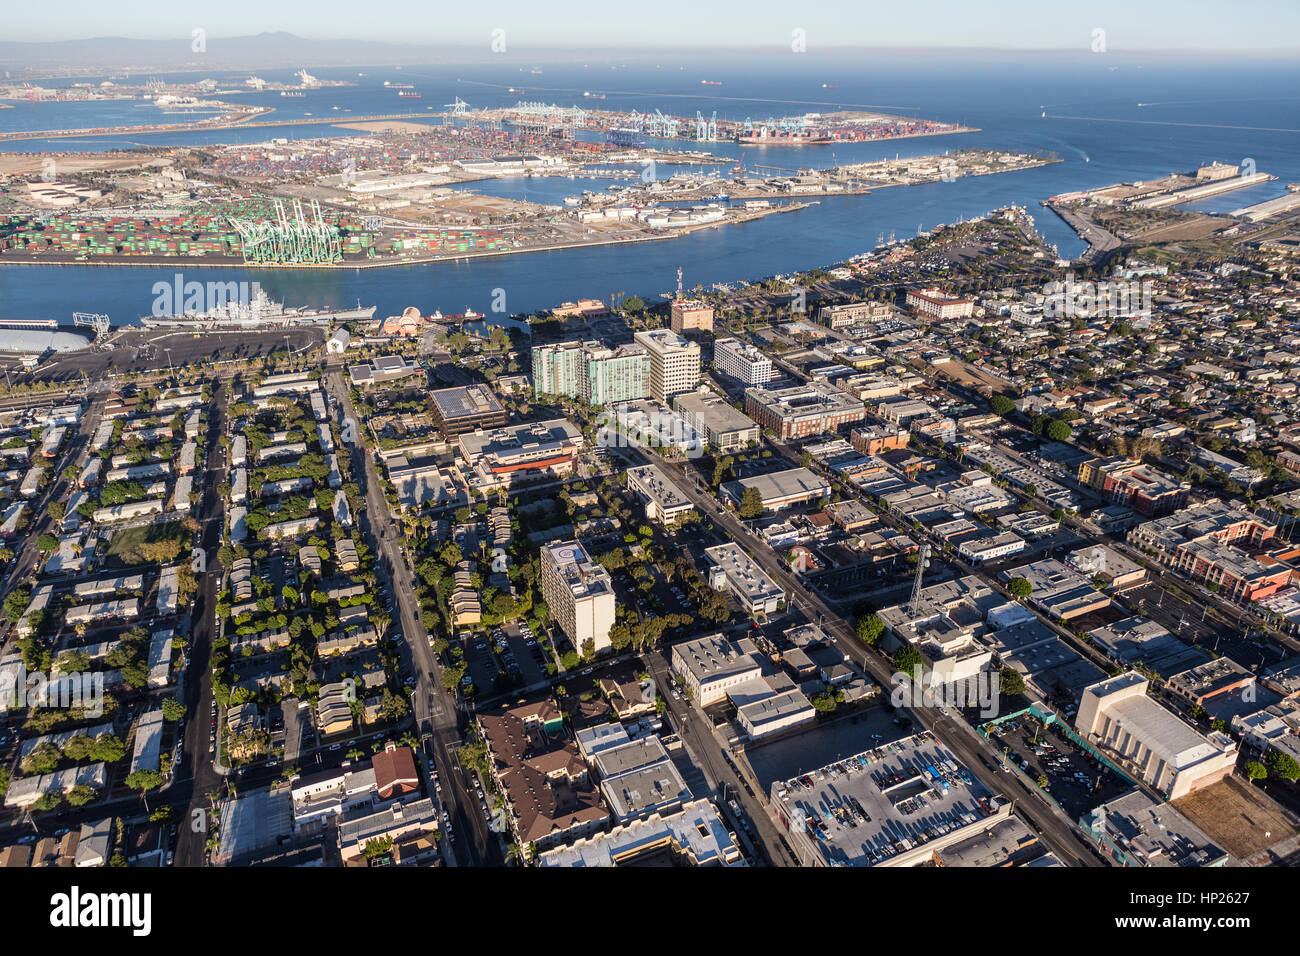 Los Angeles, Kalifornien, USA - 16. August 2016: Luftaufnahme der Innenstadt von San Pedro und Terminal Island in Süd-Kalifornien. Stockfoto